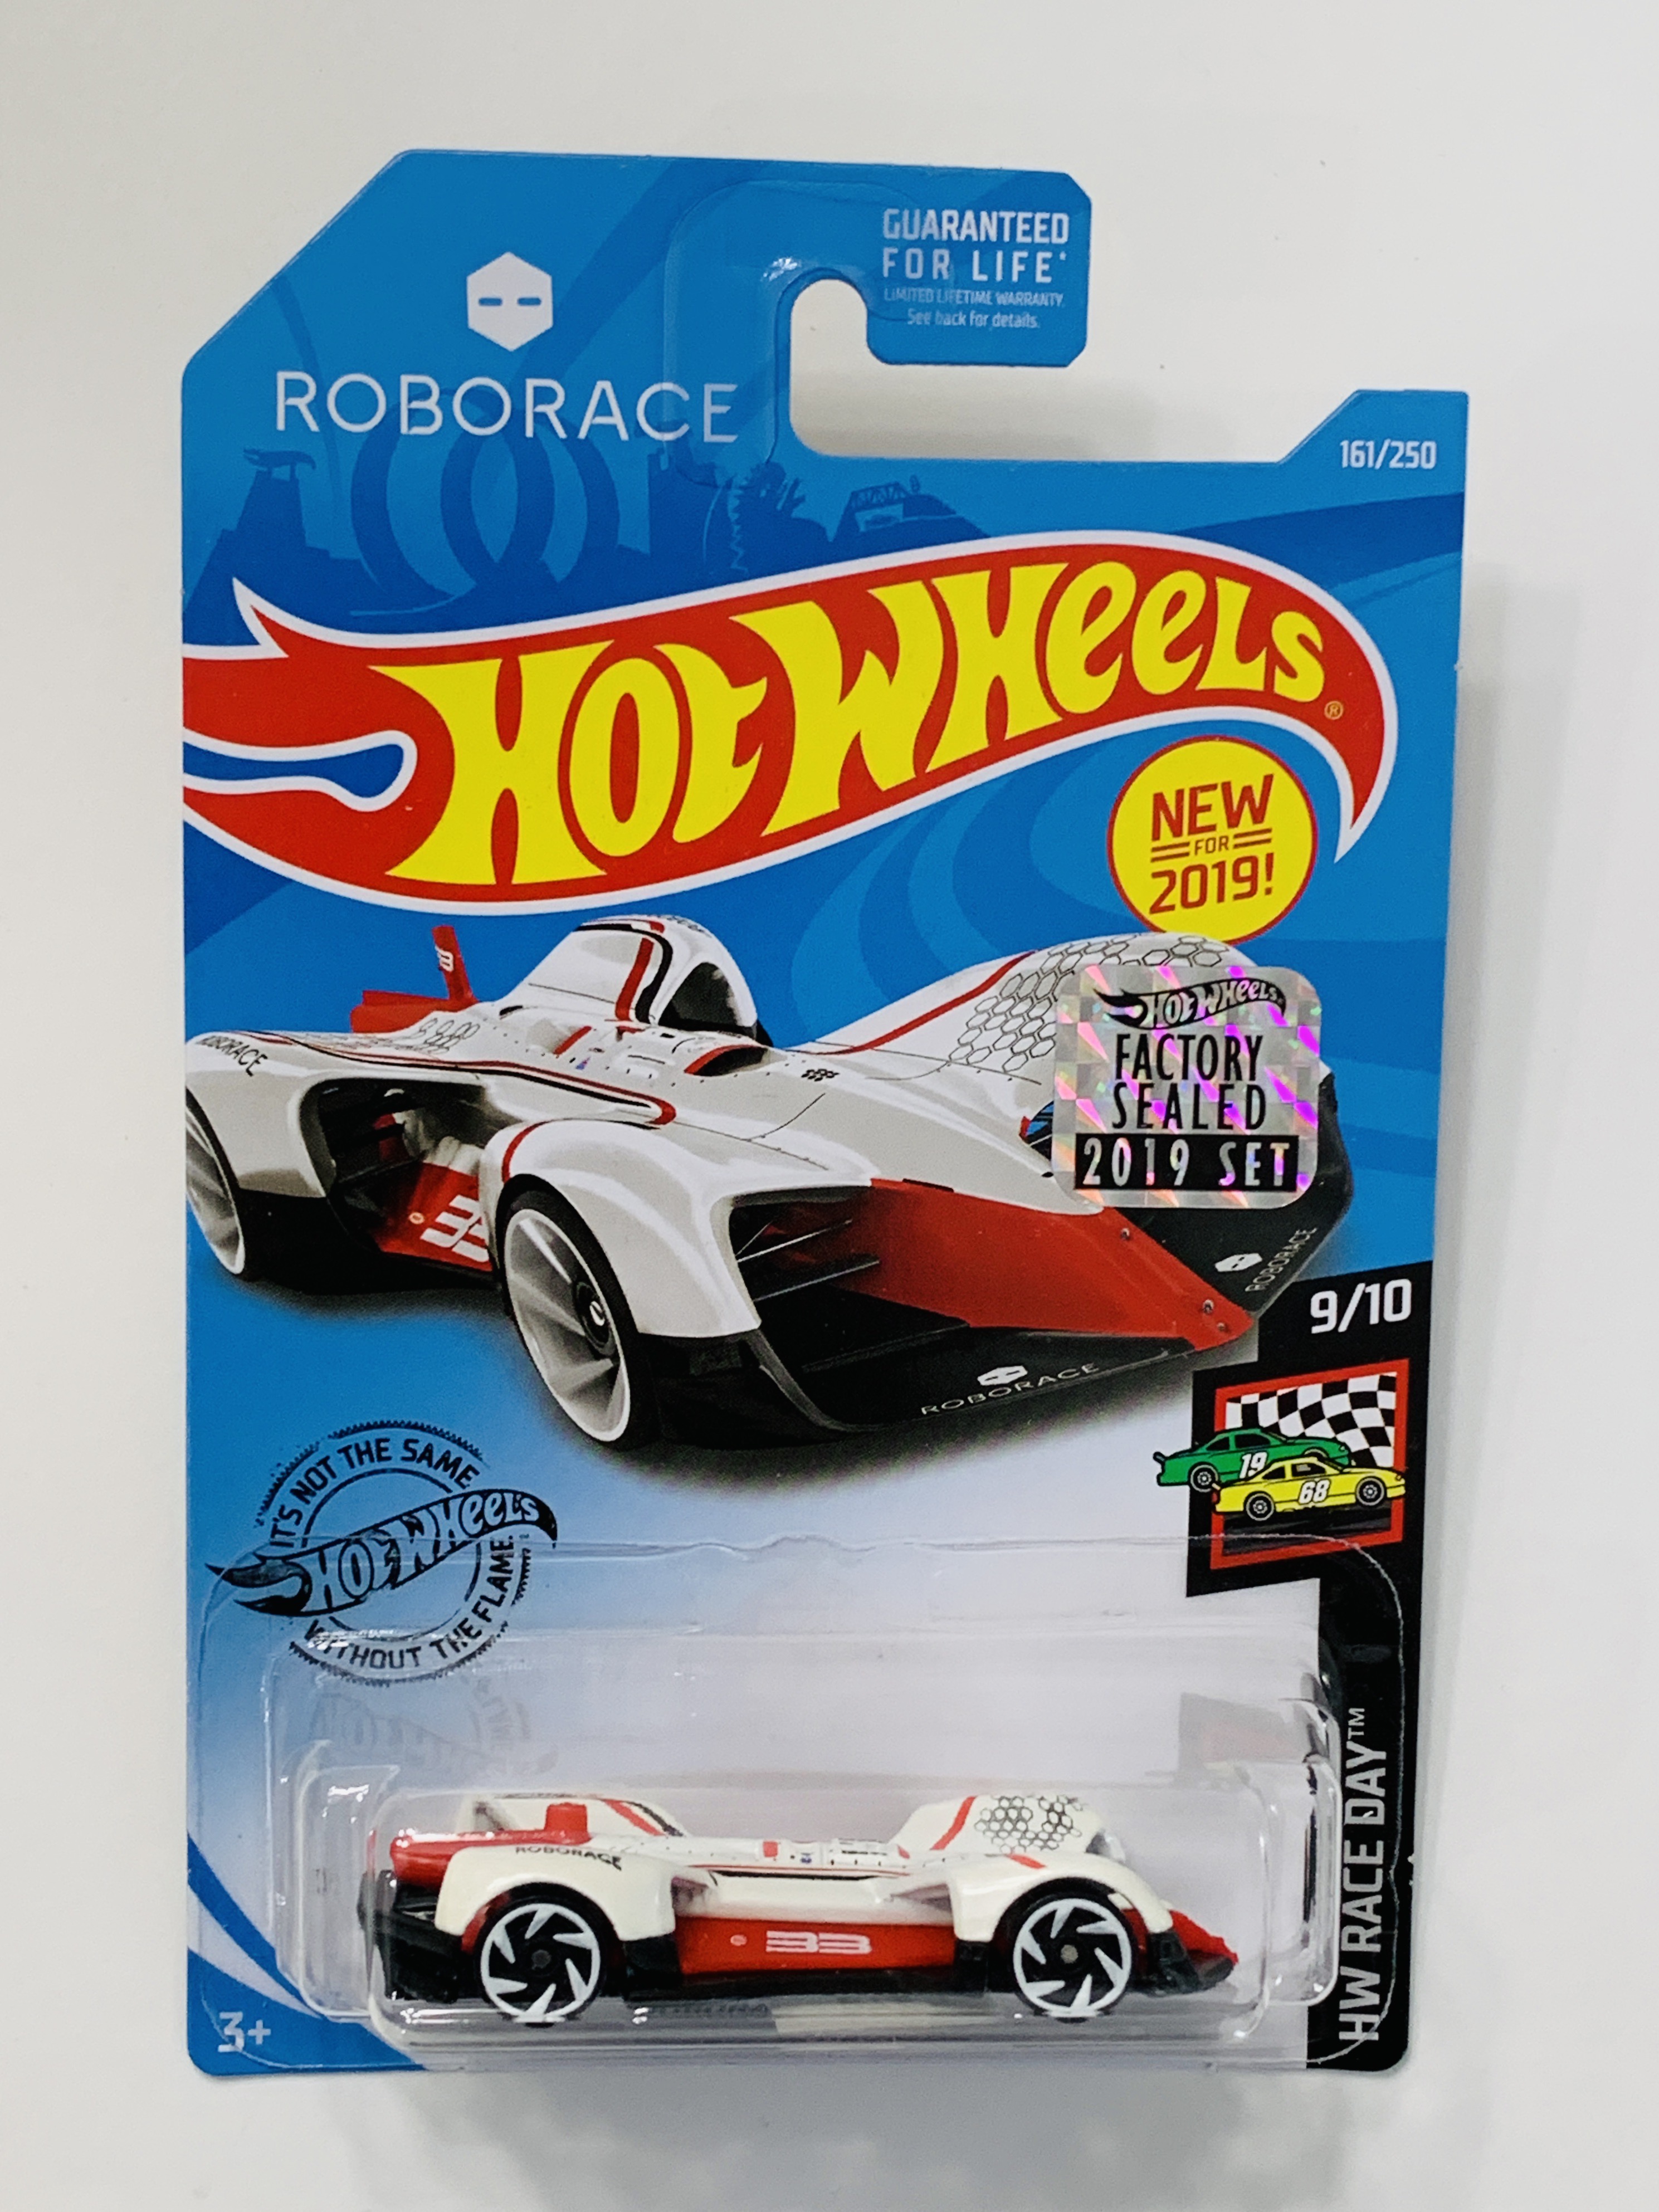 Hot Wheels 2019 Factory Set #161 Roborace Robocar - White